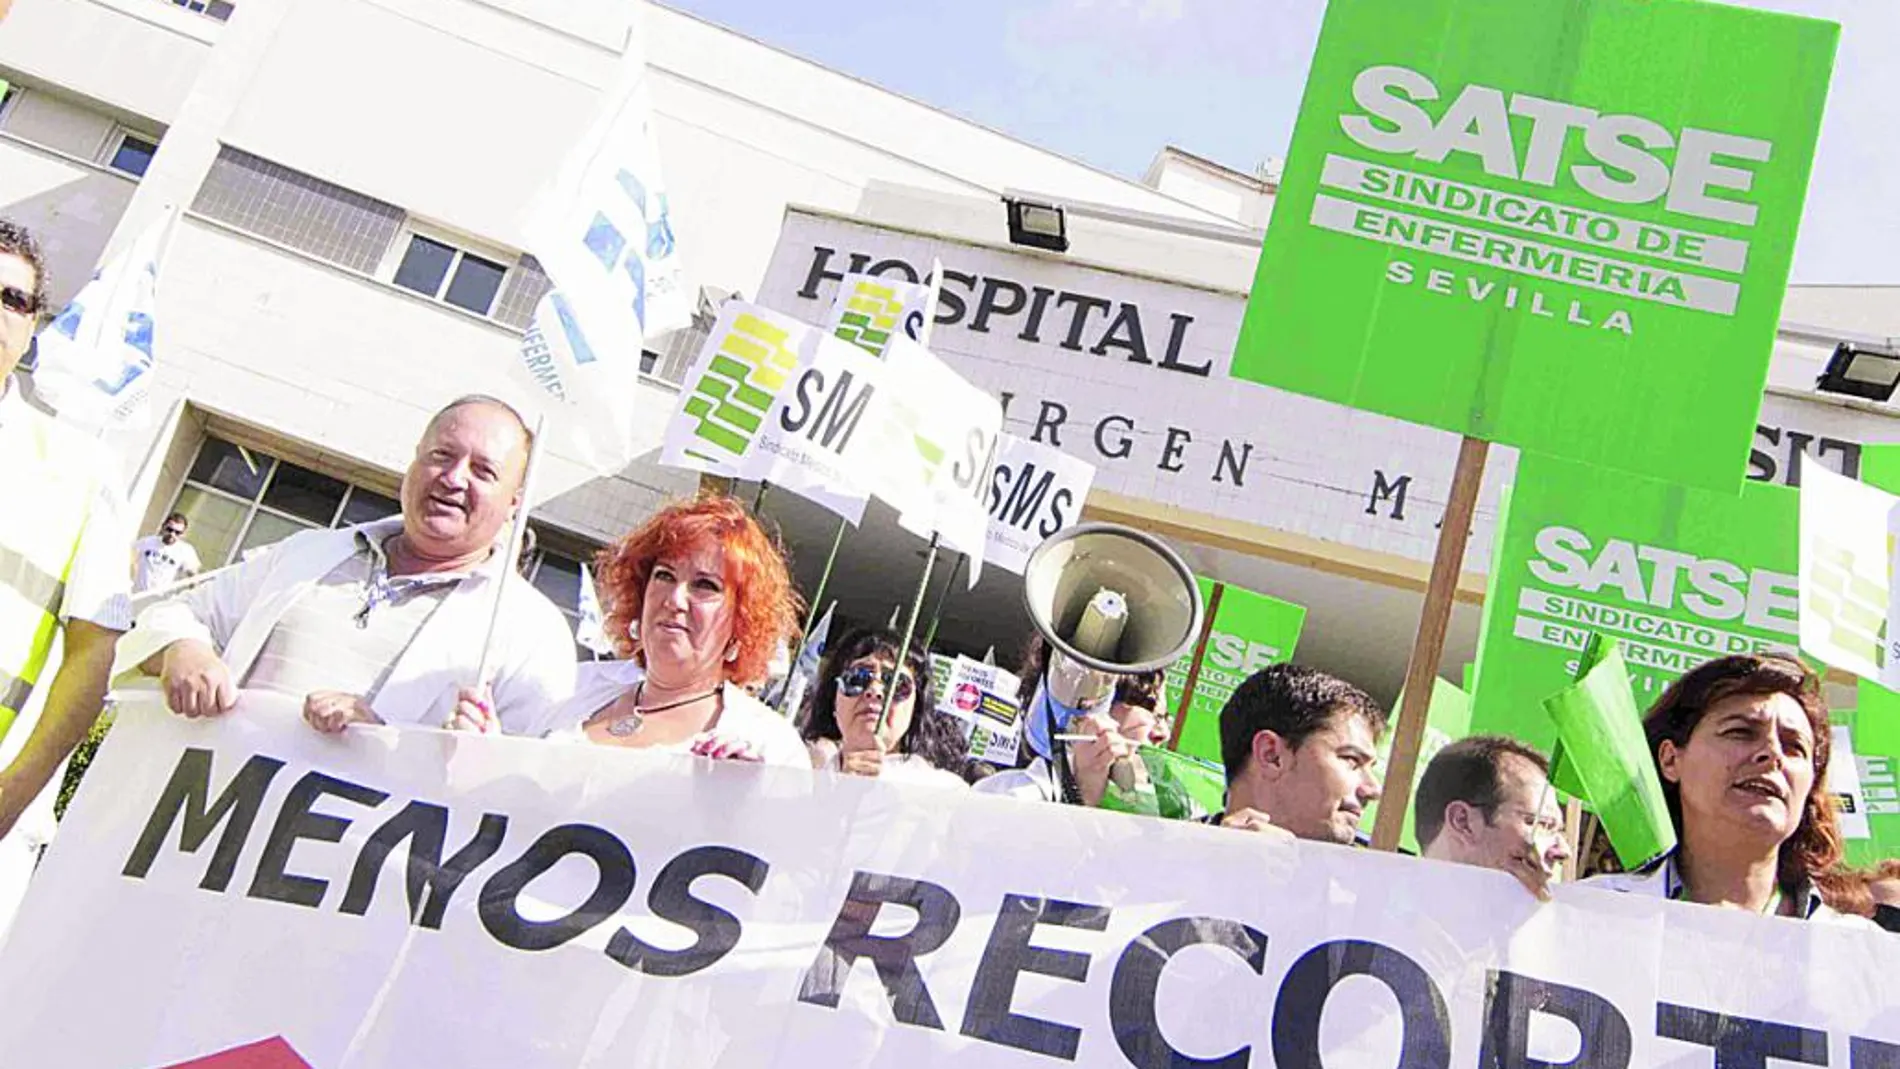 El sindicato médico y Satse han protestado en múltiples ocasiones contra los recortes sanitarios